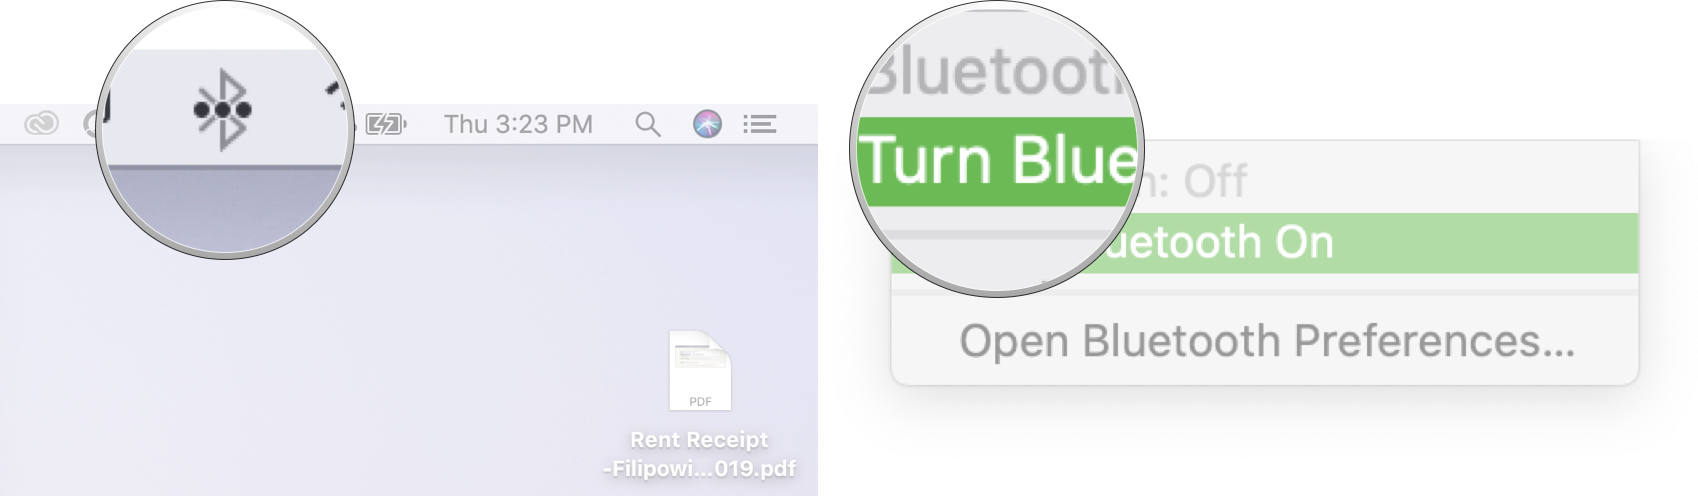 Menyalakan Bluetooth di Mac: Klik simbol Bluetooth di Menubar, lalu klik nyalakan Bluetooth